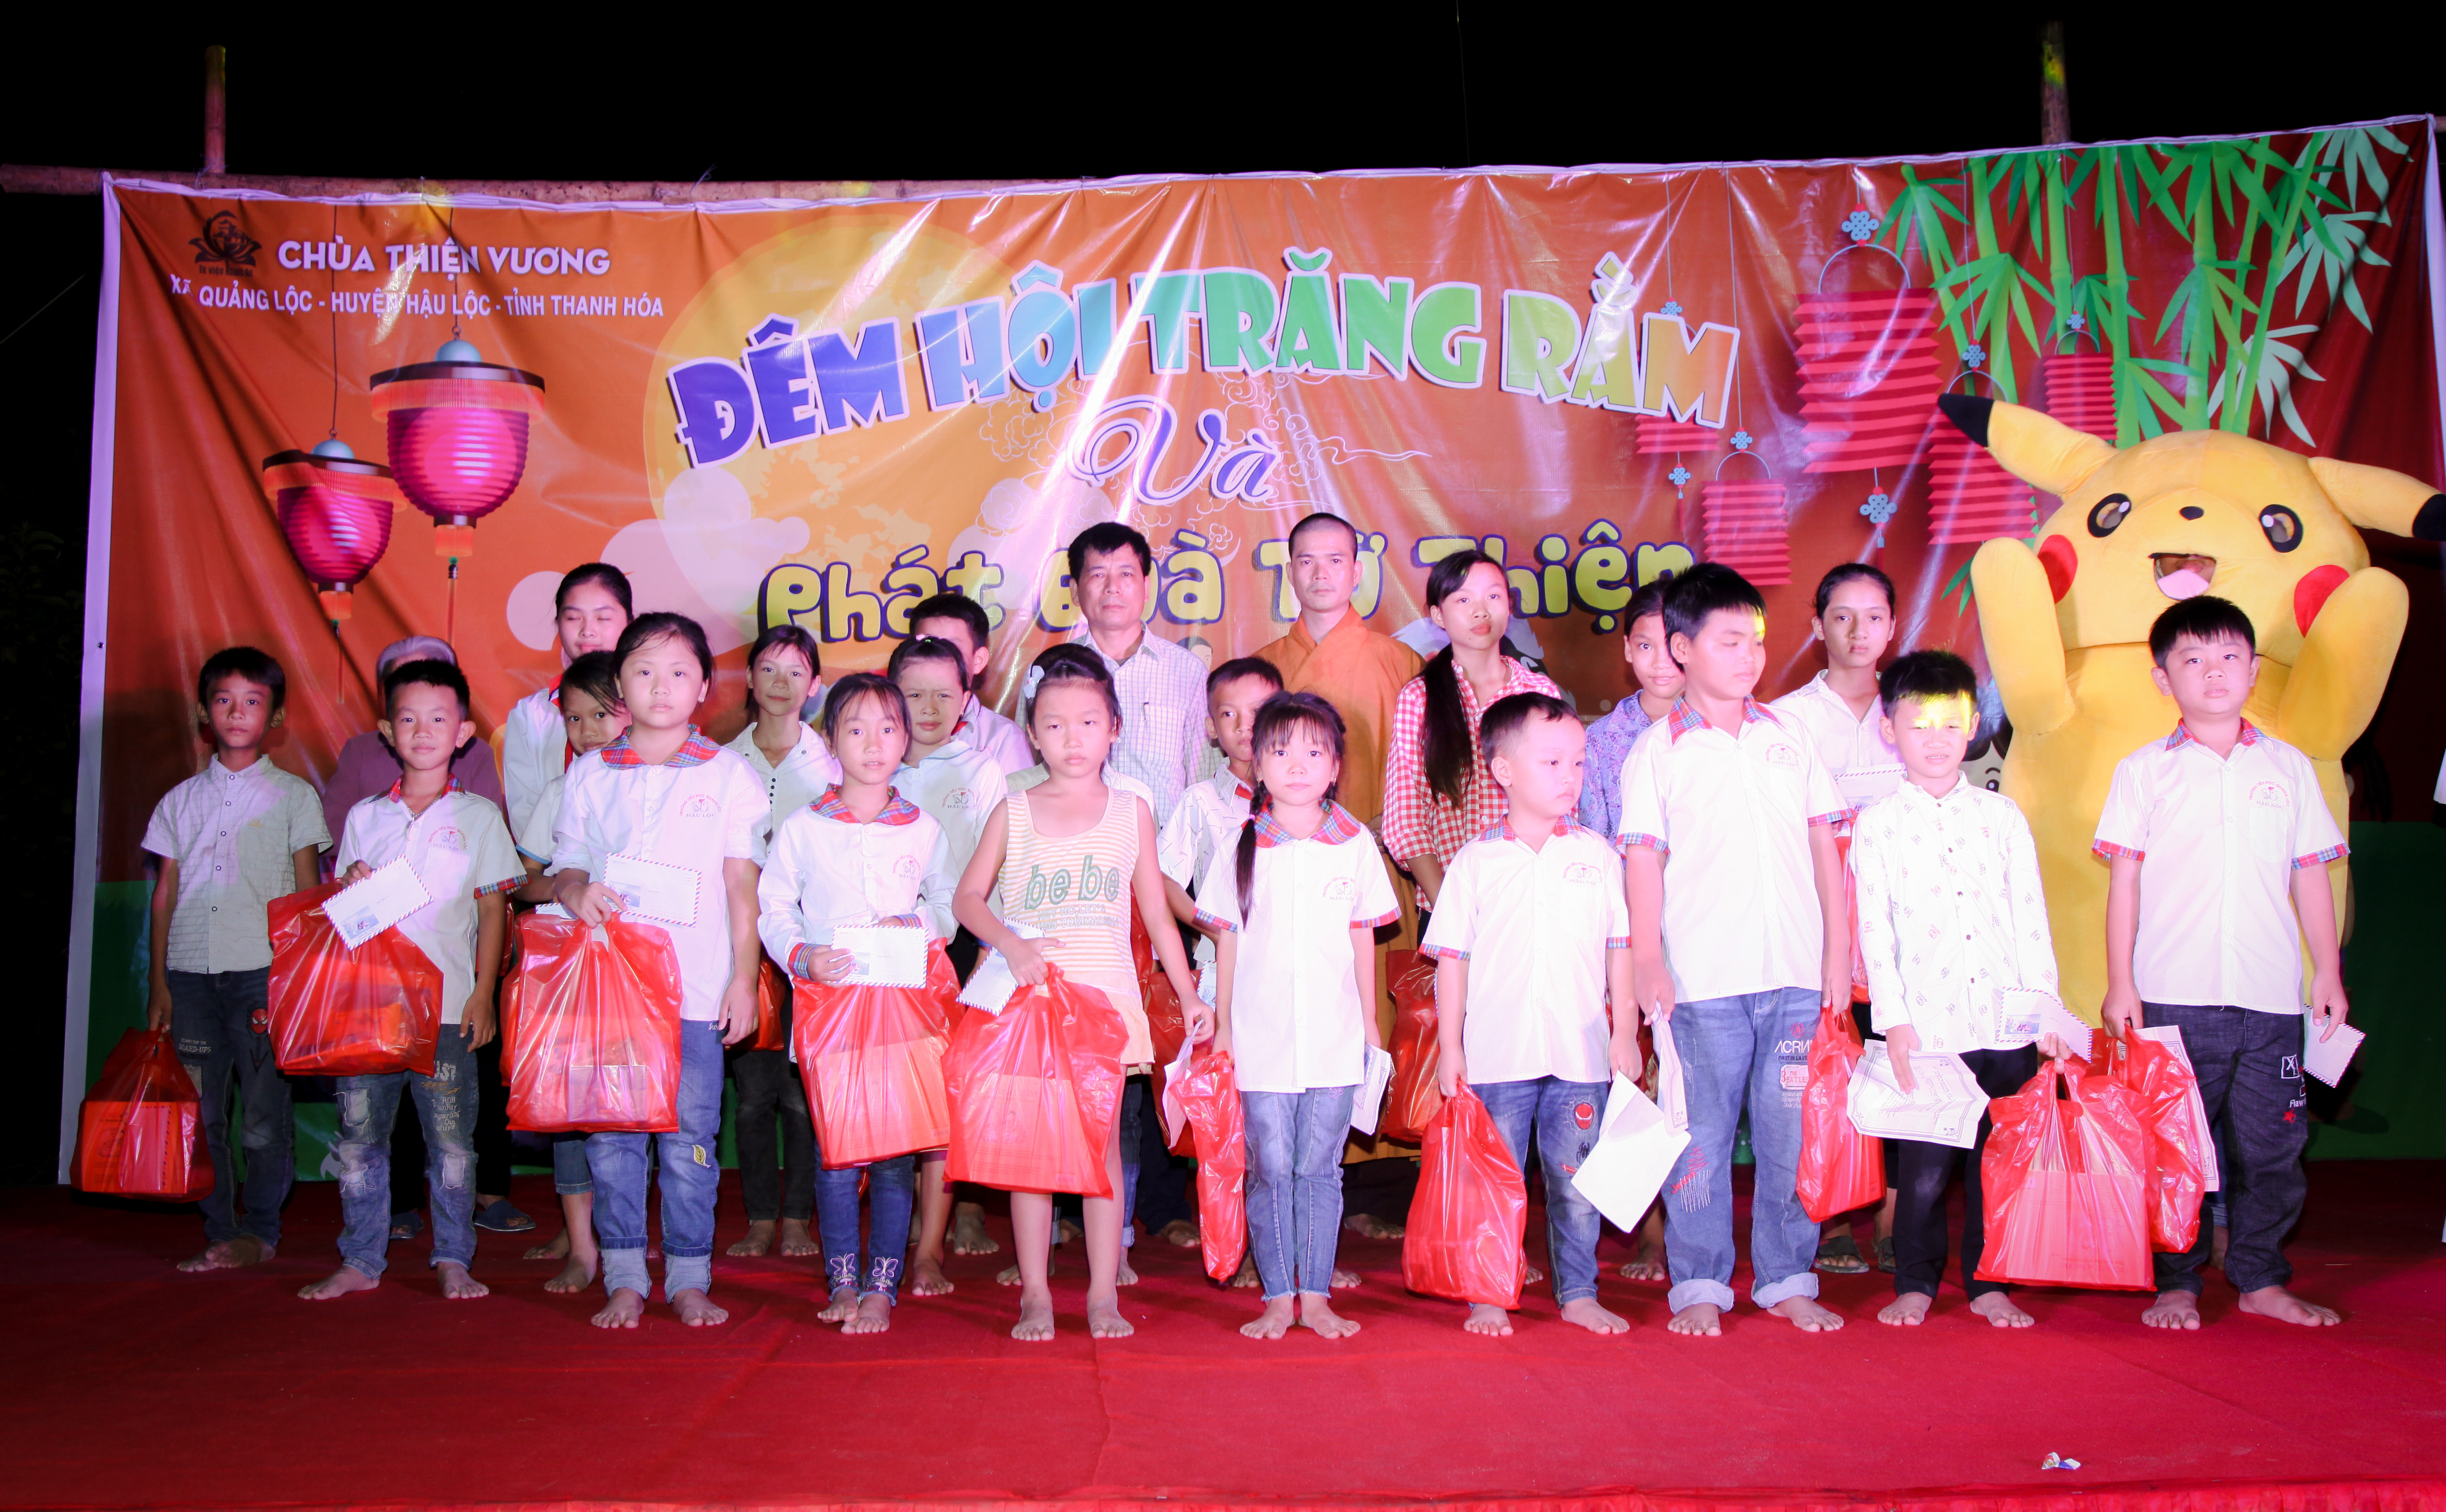 Chùa Thiện Vương tổ chức chương trình Đêm Hội Trăng Rằm cho 600 em nhỏ tại xã Quang Lộc, Hậu Lộc, tỉnh Thanh Hoá